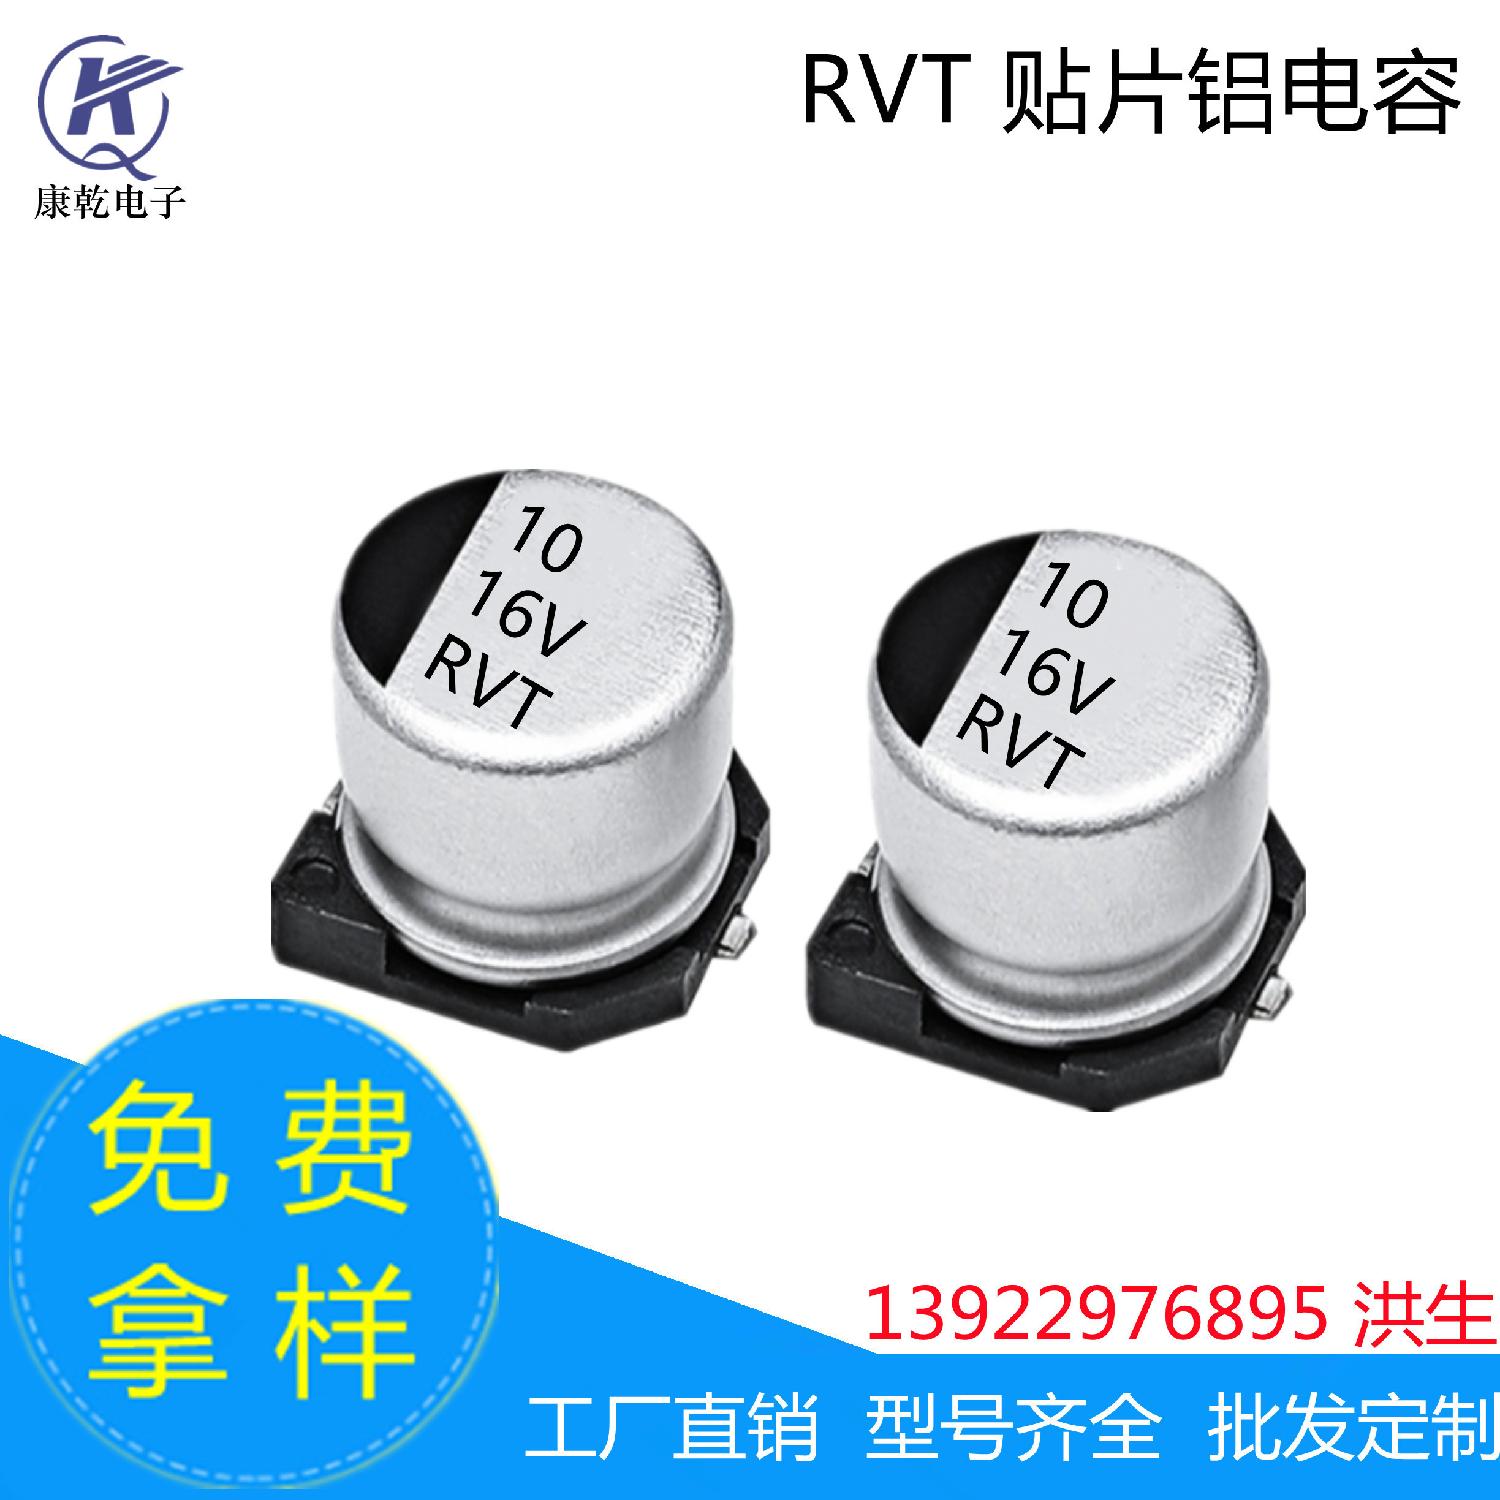 RVT贴片铝电解电容器 10uF 16V